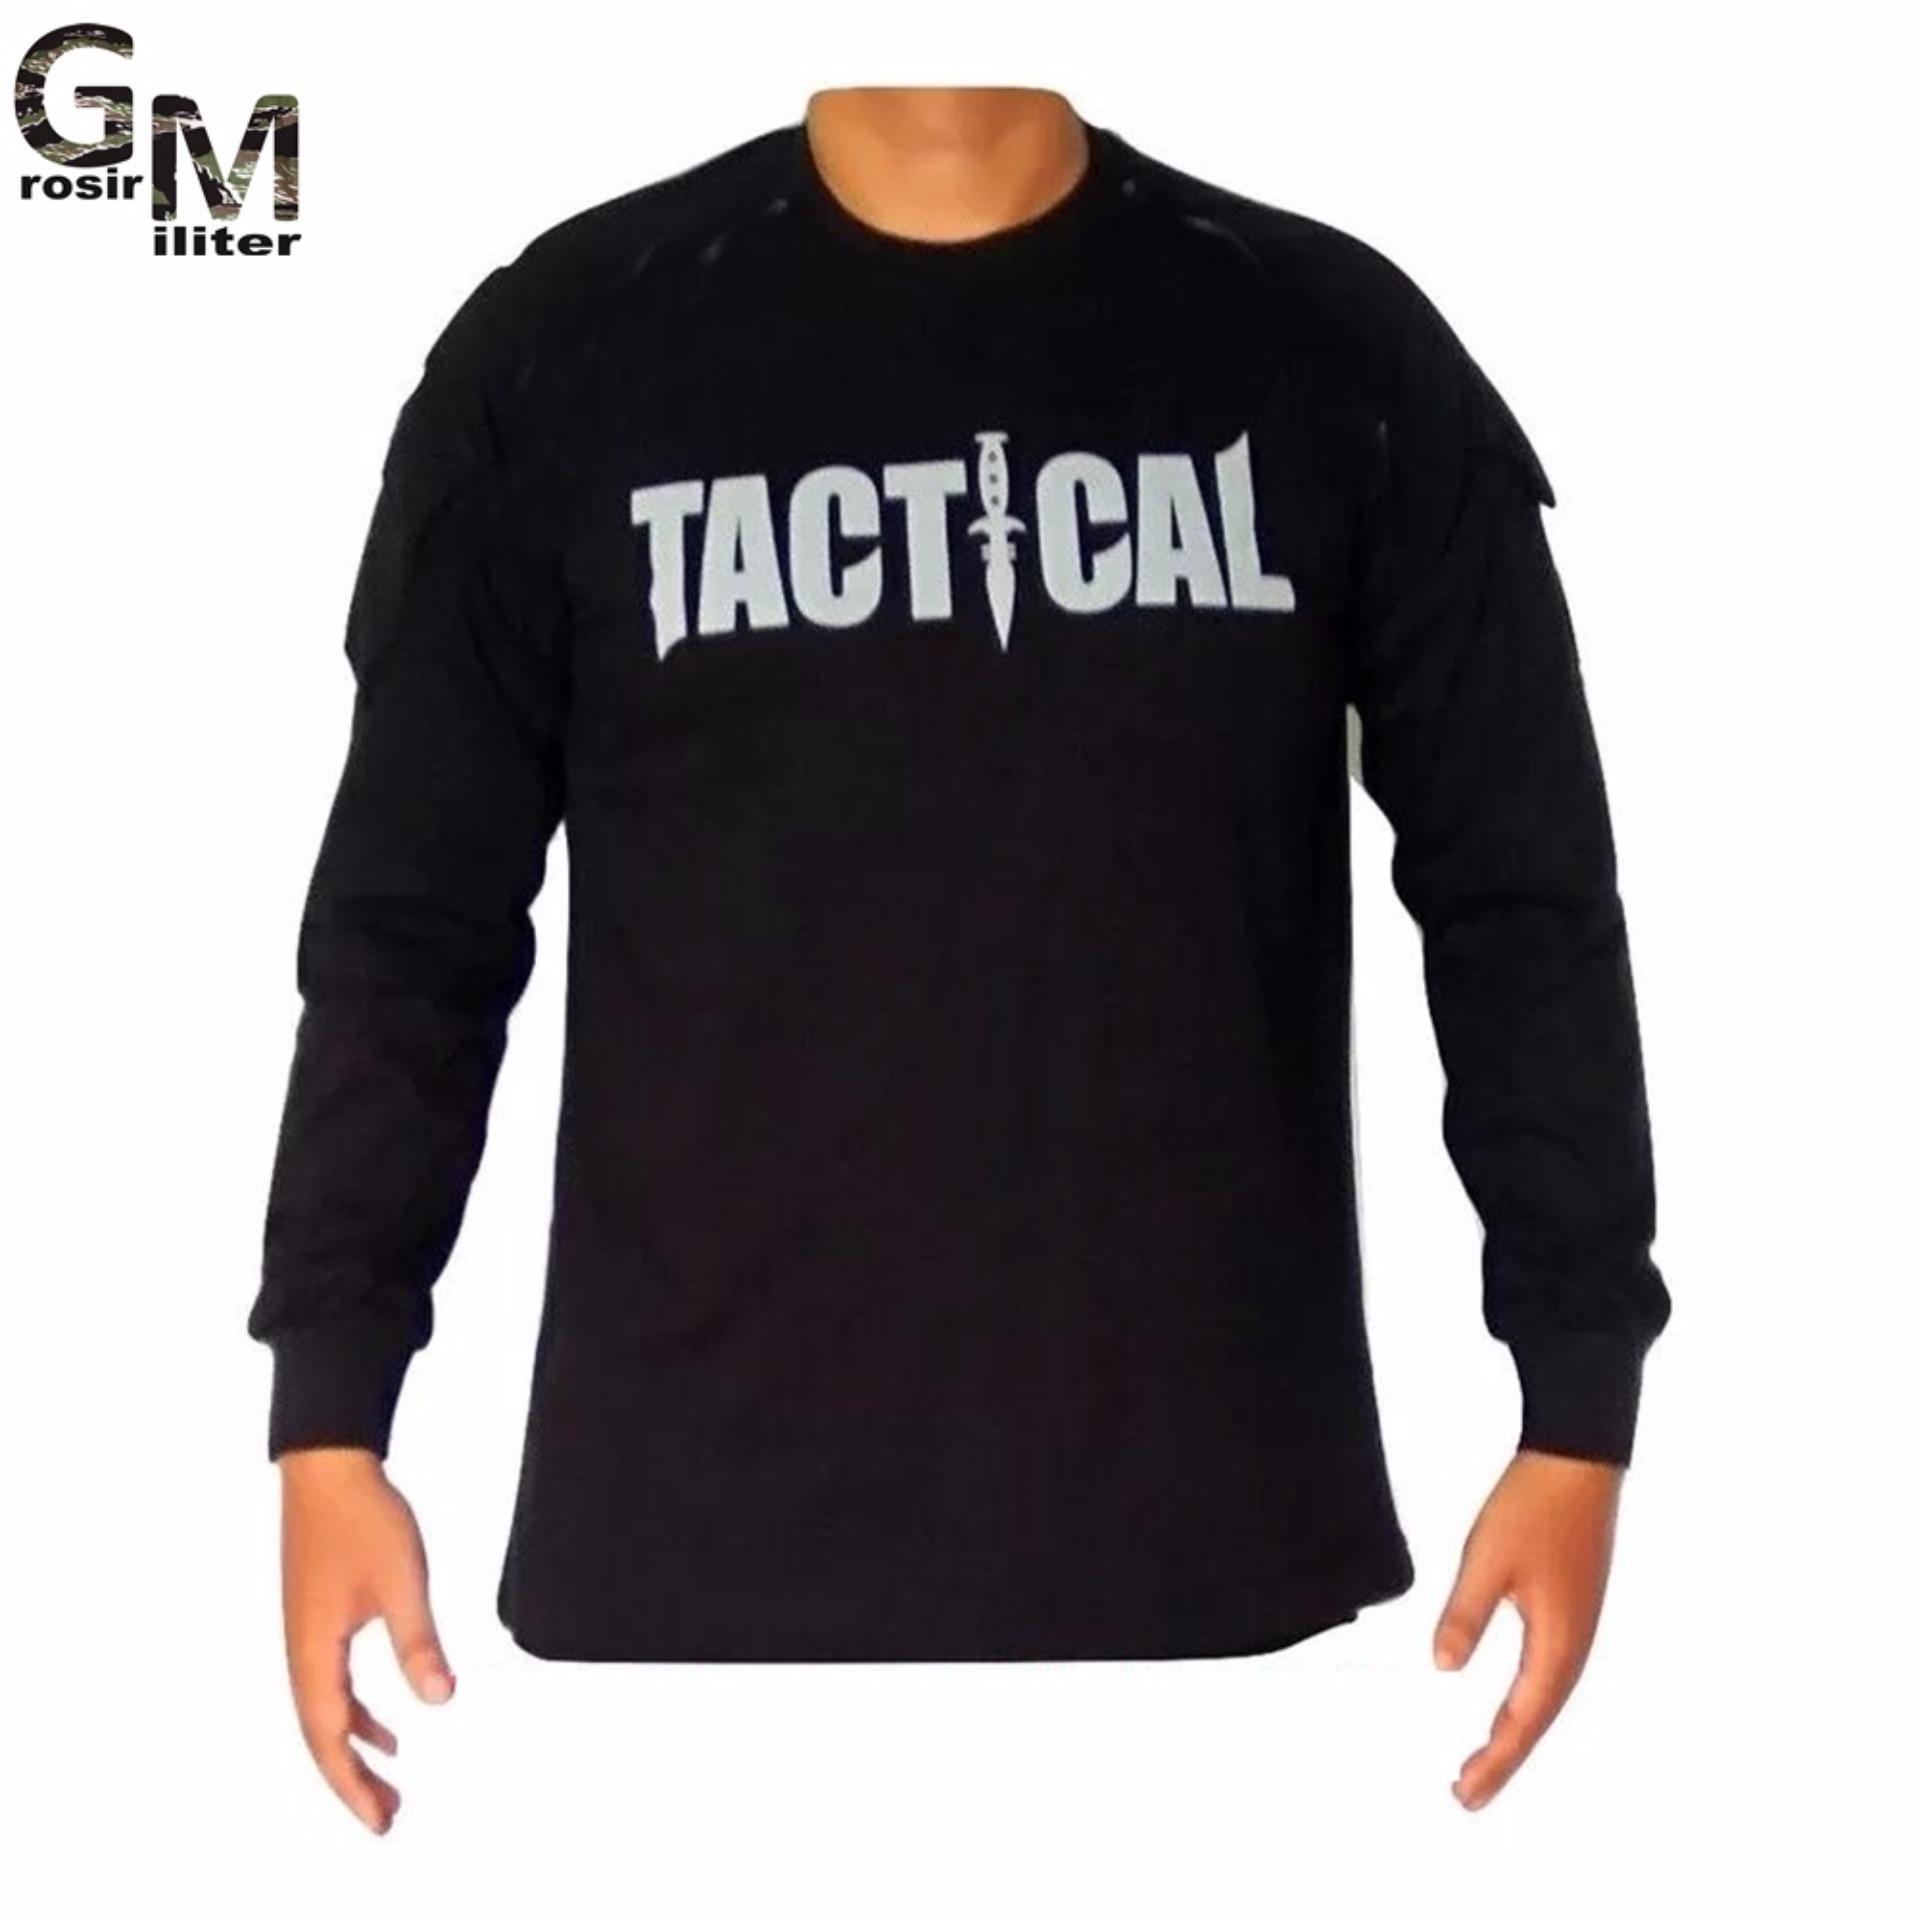  Gambar  Kaos  Tactical Lengan  Panjang  Desain Kaos  Menarik